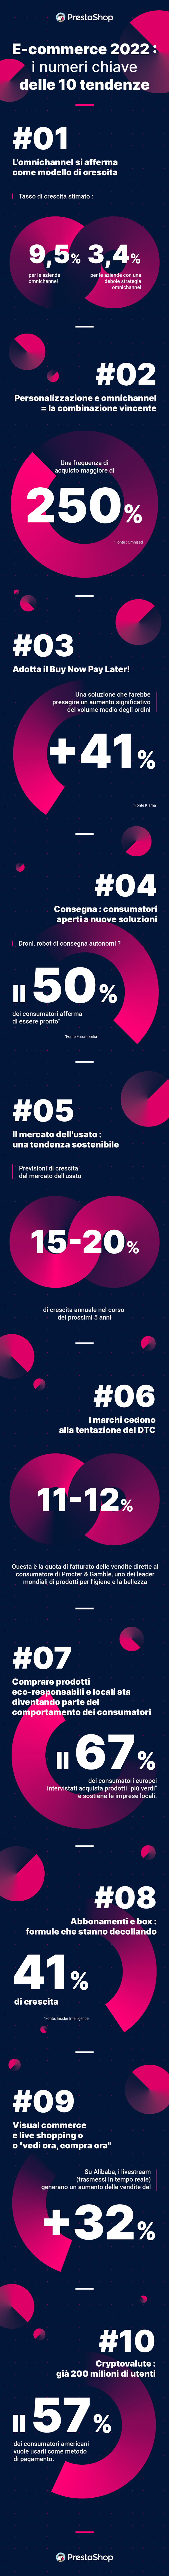 Infografica Tendenze E-commerce 2022